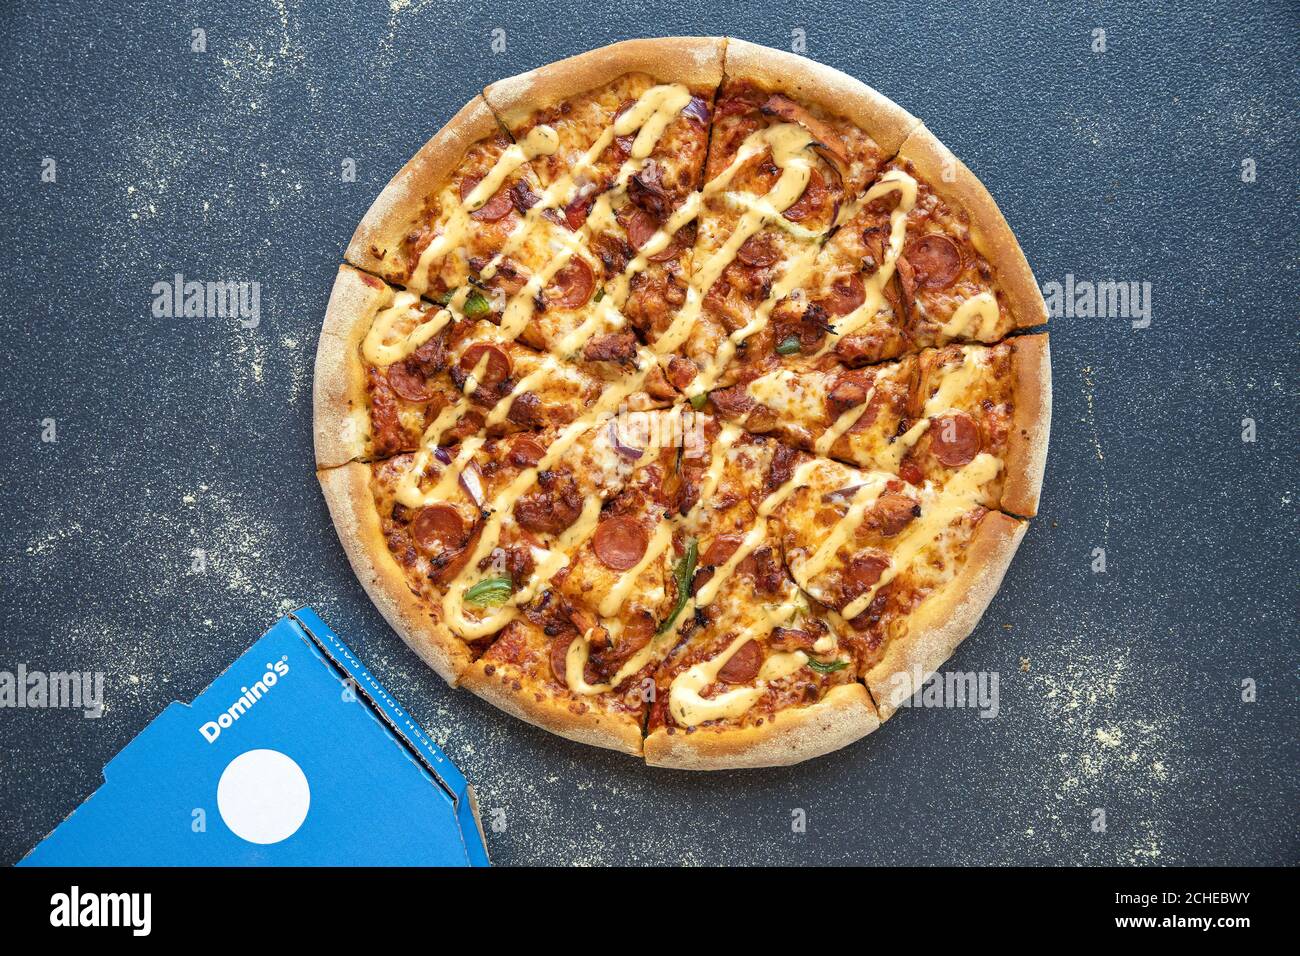 Dominos Pizzas Immagini e Fotos Stock - Alamy